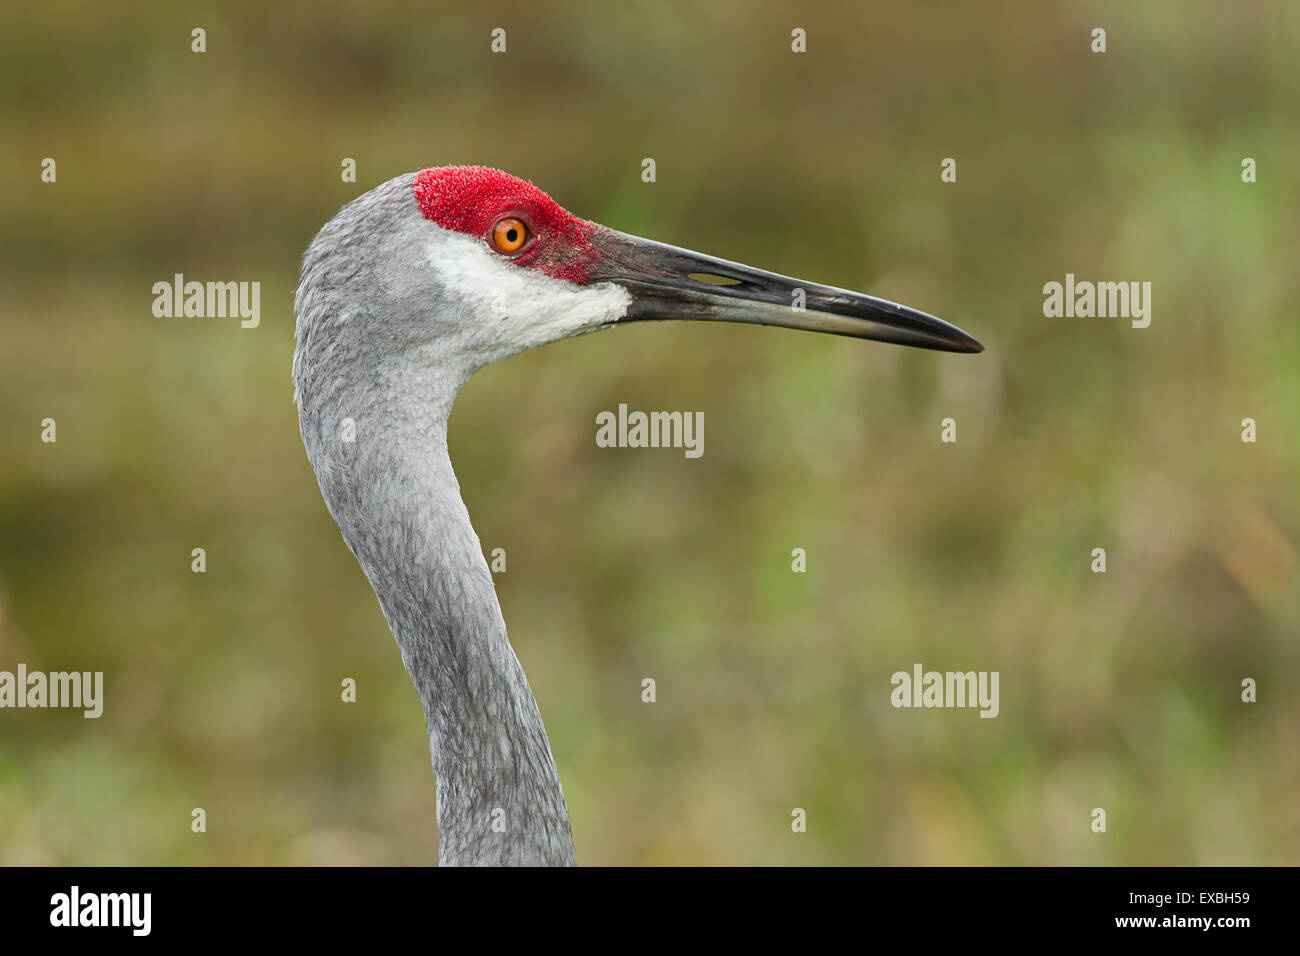 A close up portrait of a sandhill crane. Stock Photo